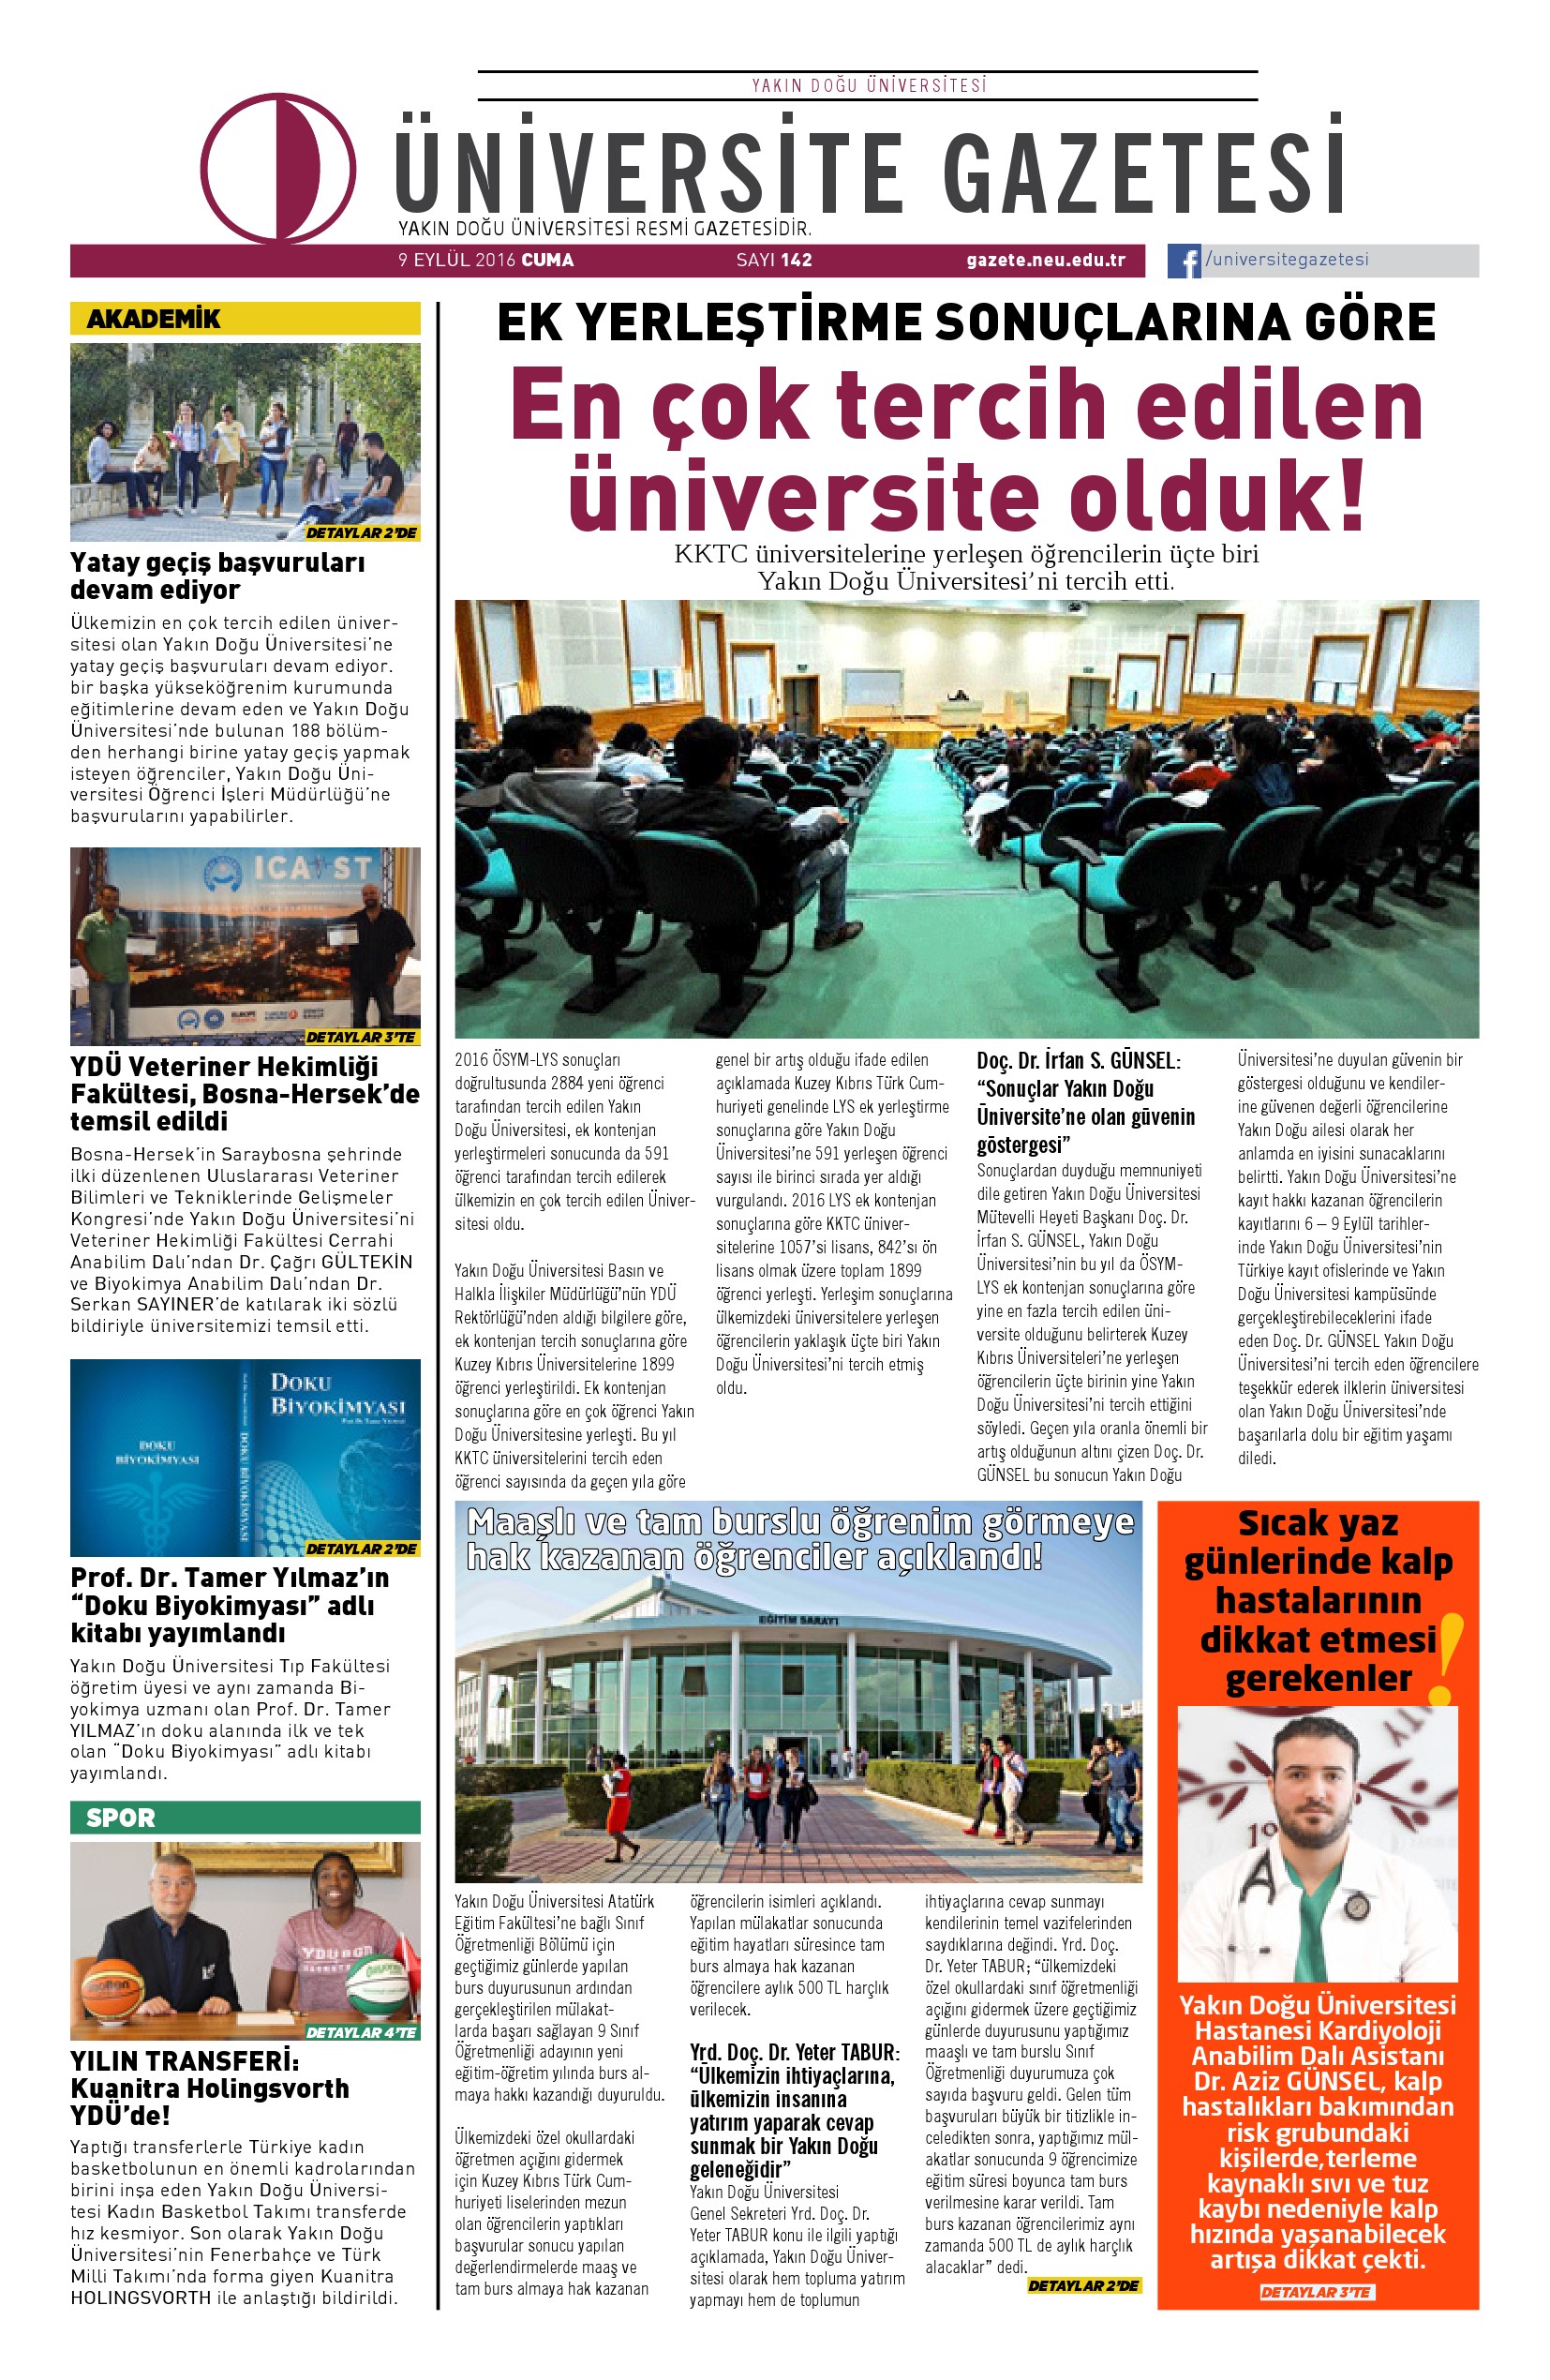 Yakın Doğu Üniversitesi, Üniversite Gazetesi 142. Sayısı